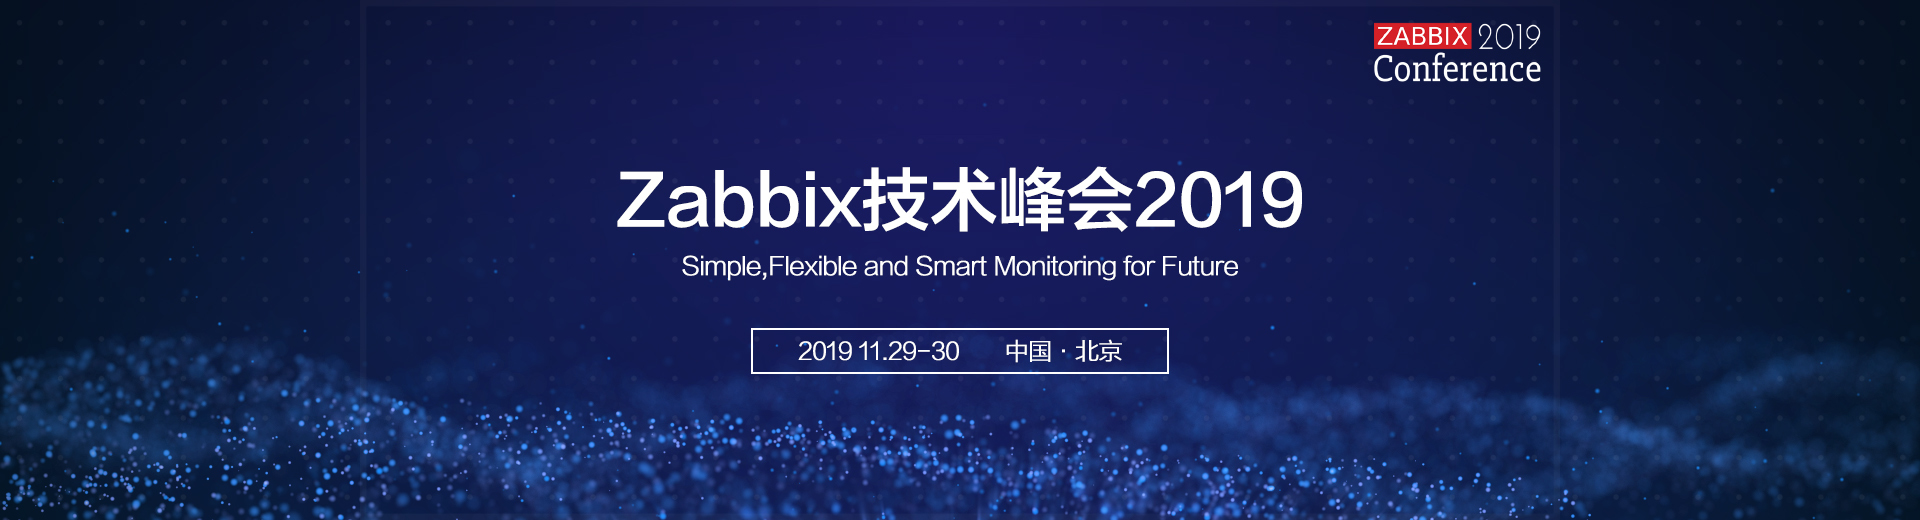 Zabbix峰会2019